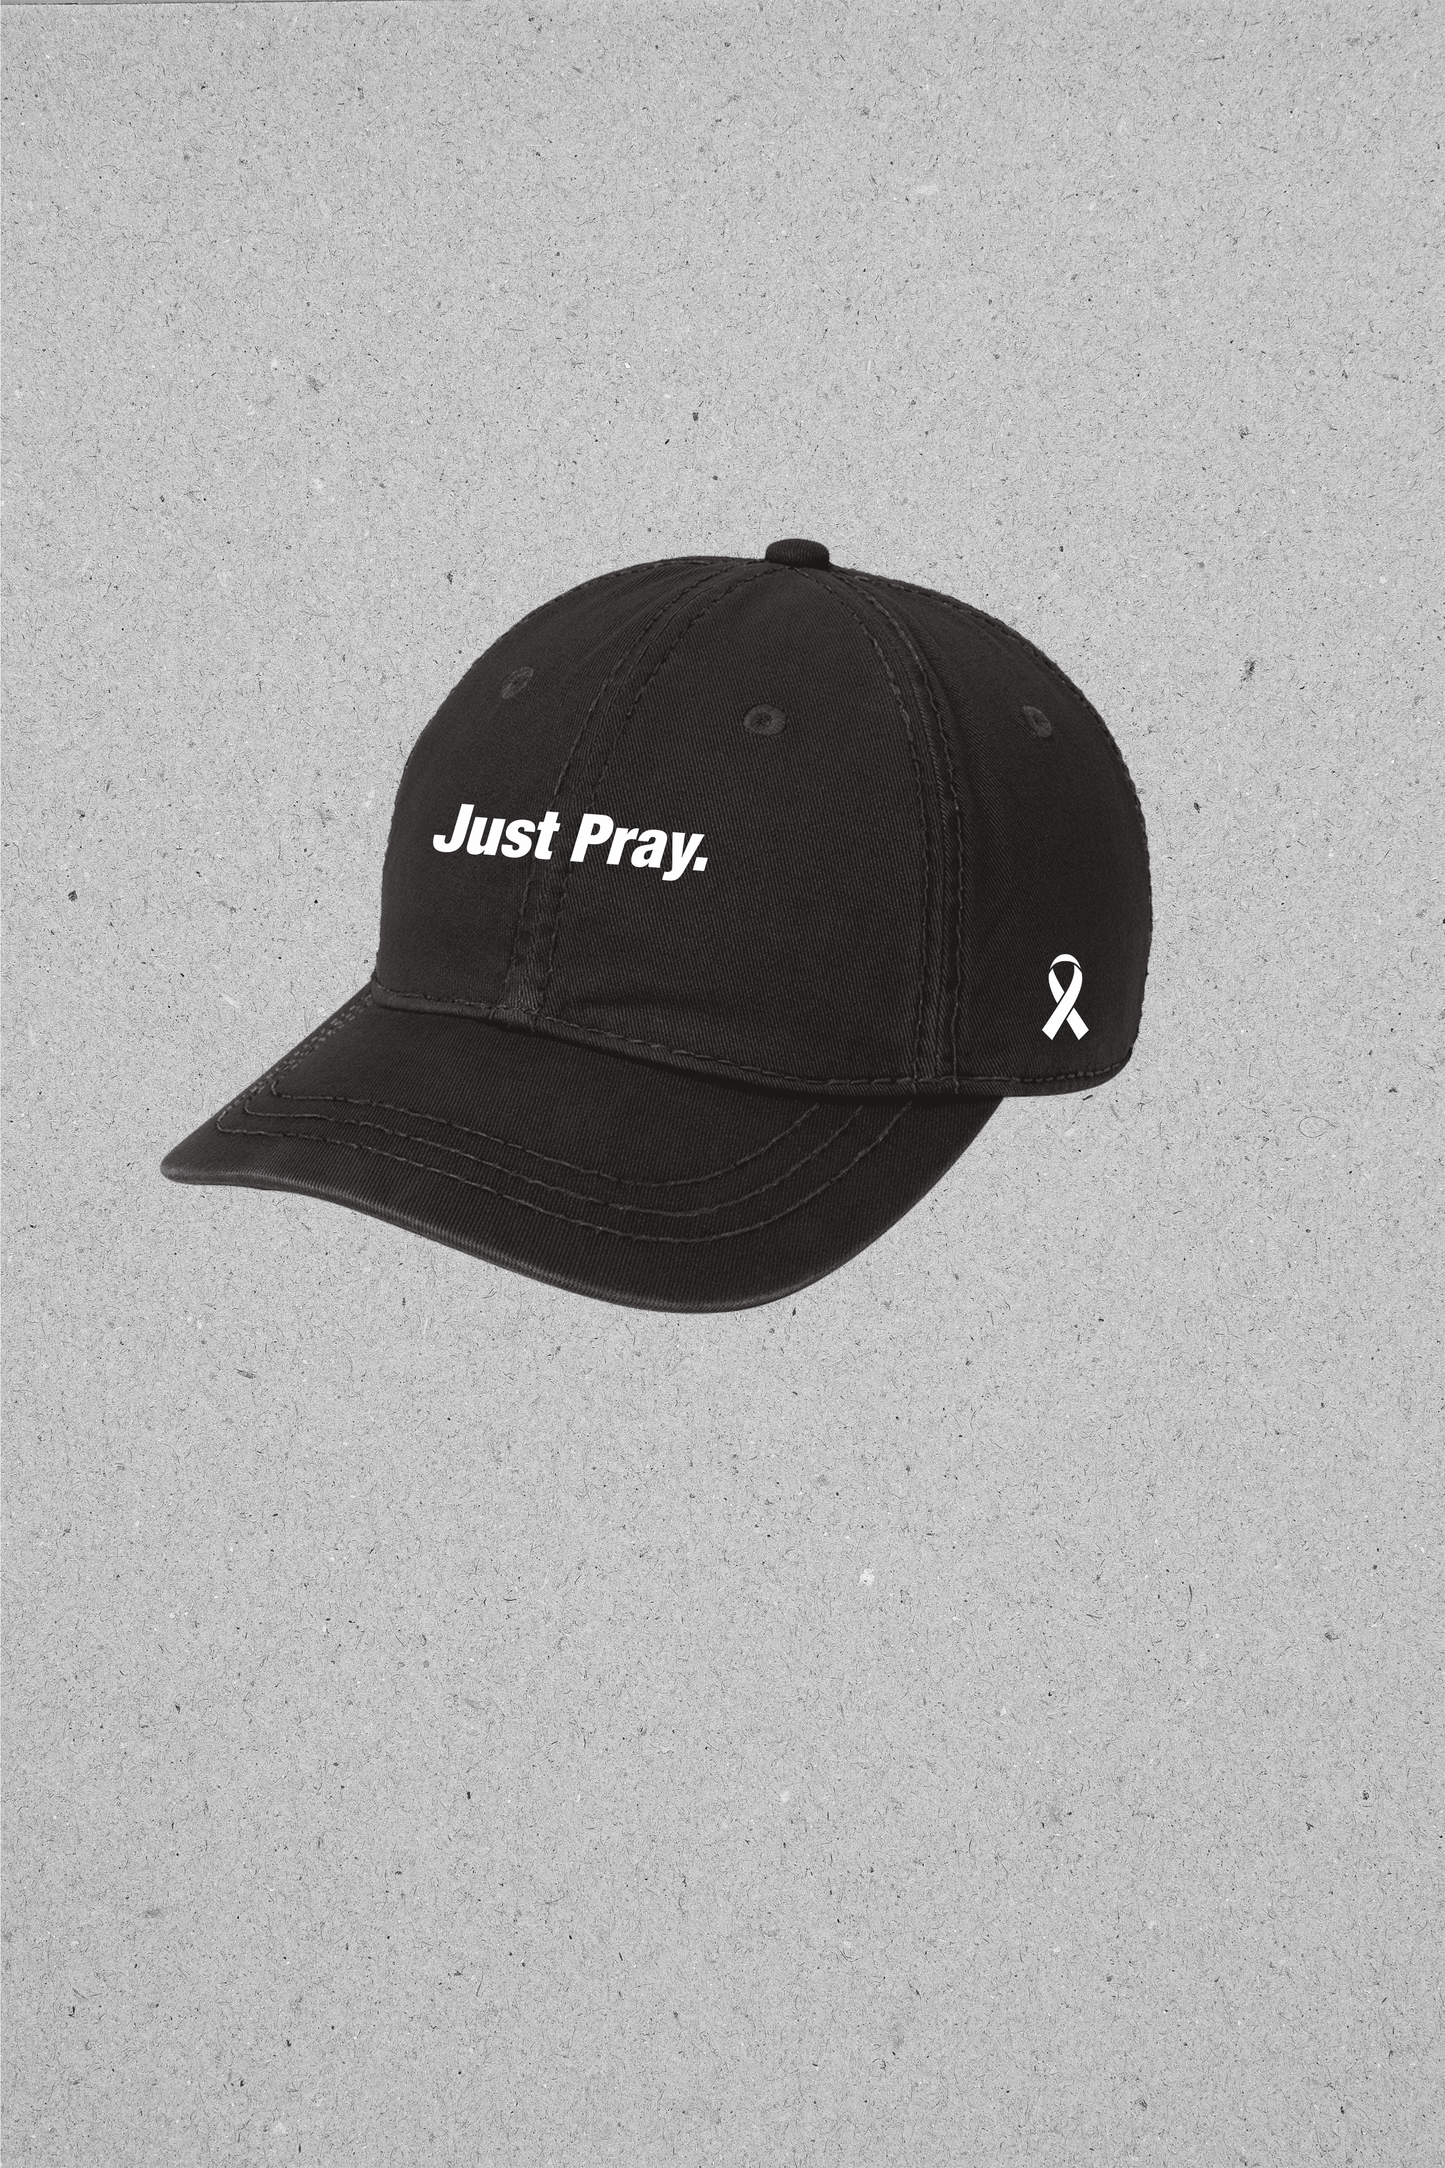 Just Pray. Cap